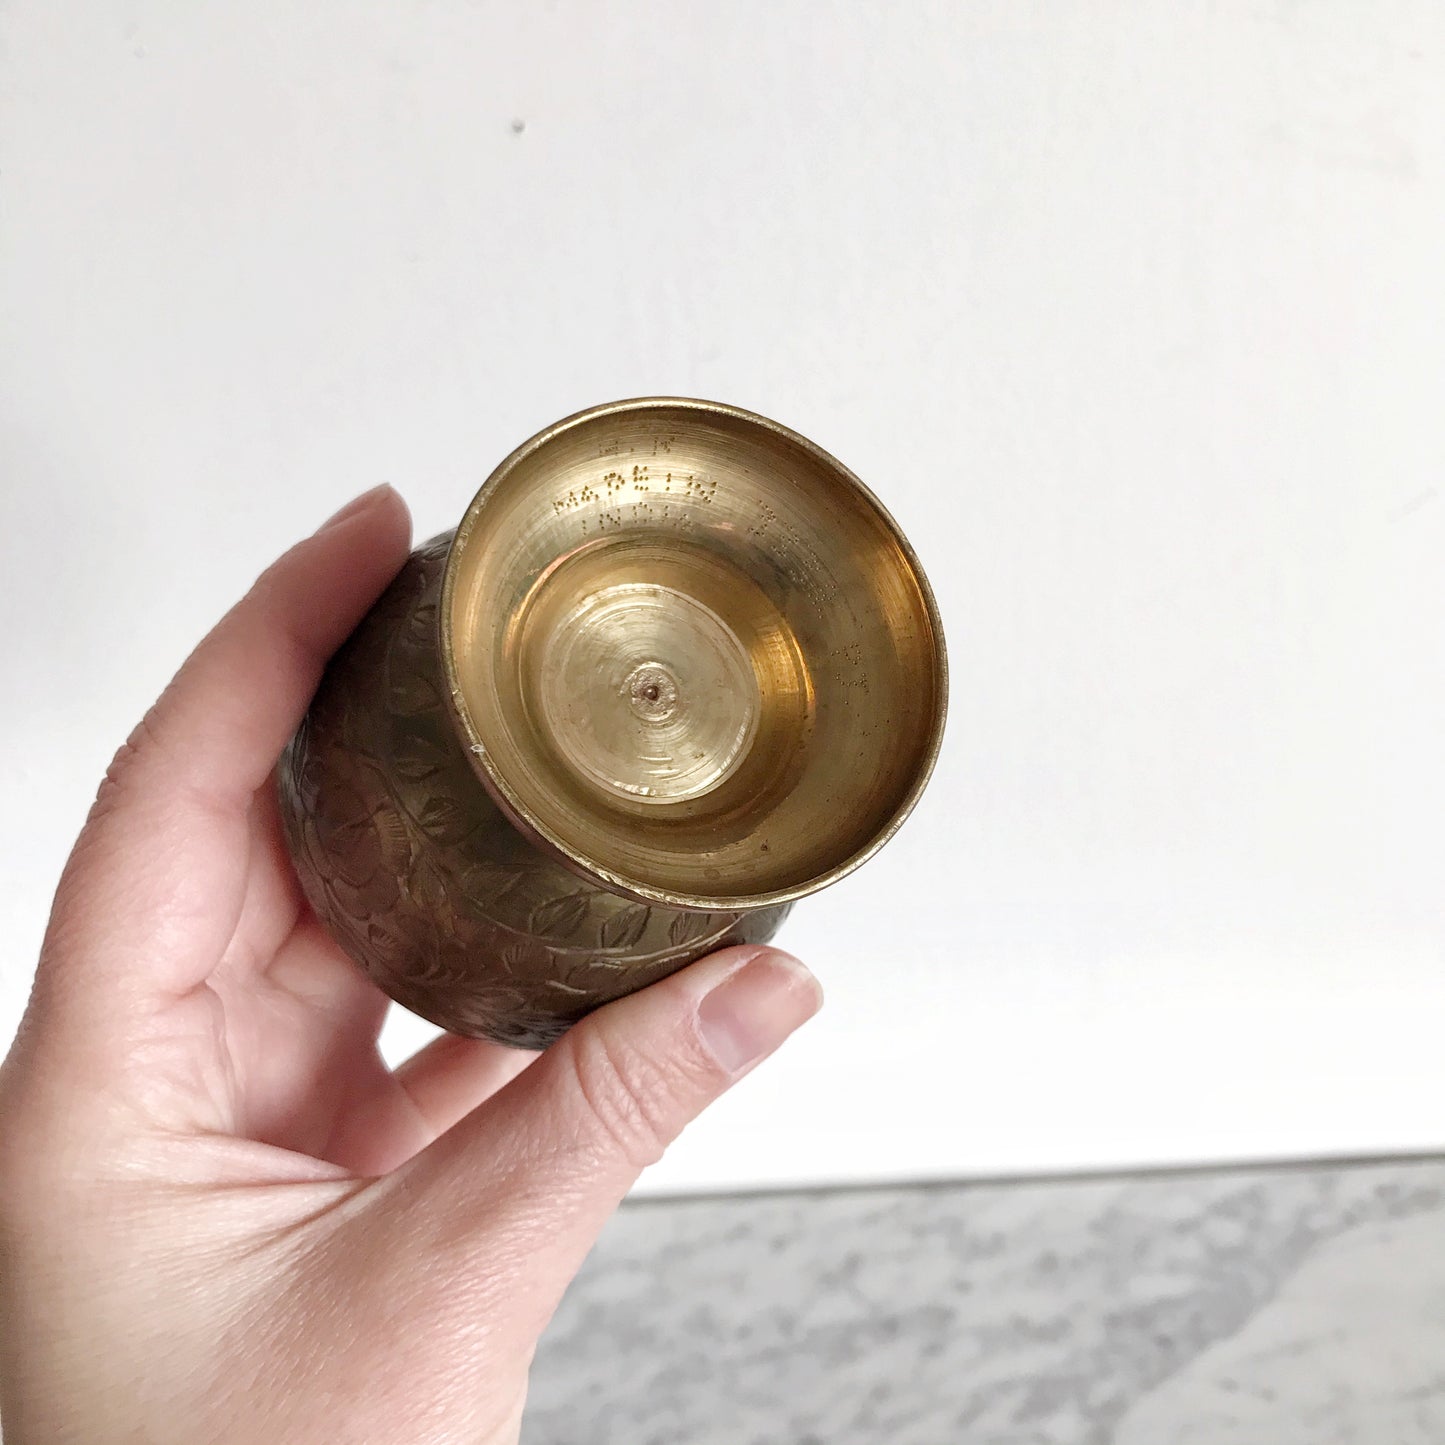 Vintage Etched Brass Vase